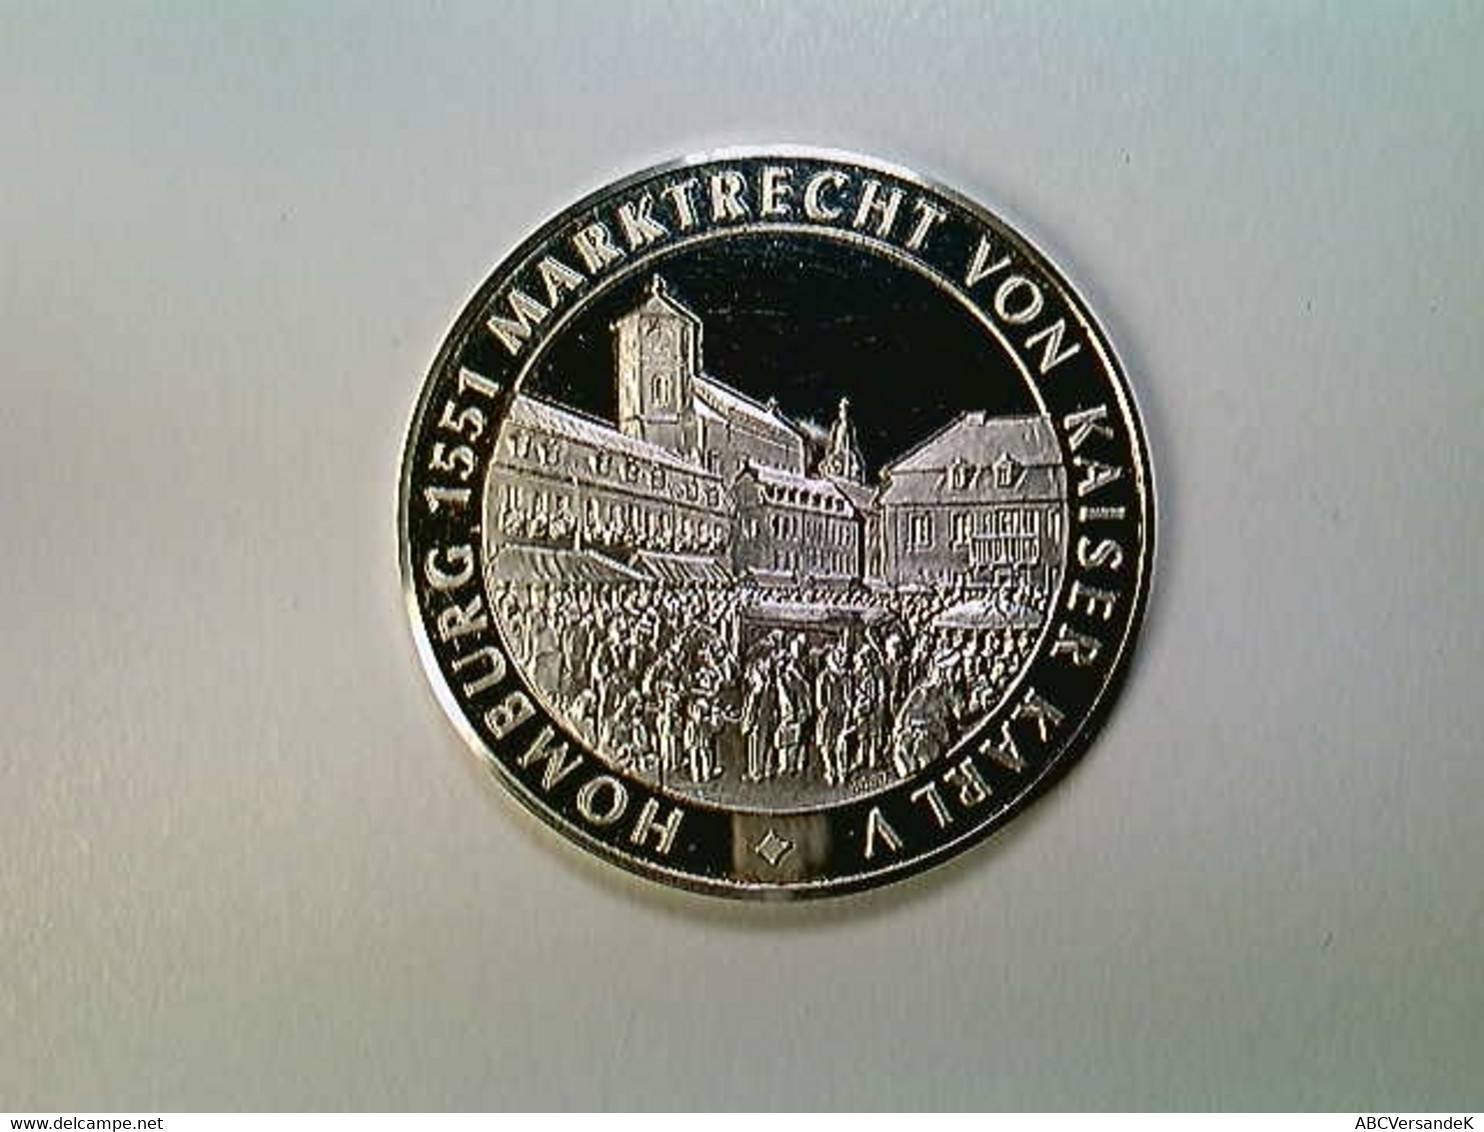 Medaille Homburg 650 Jahre Stadtrecht 1330-1980, Silber 1000 - Numismatik